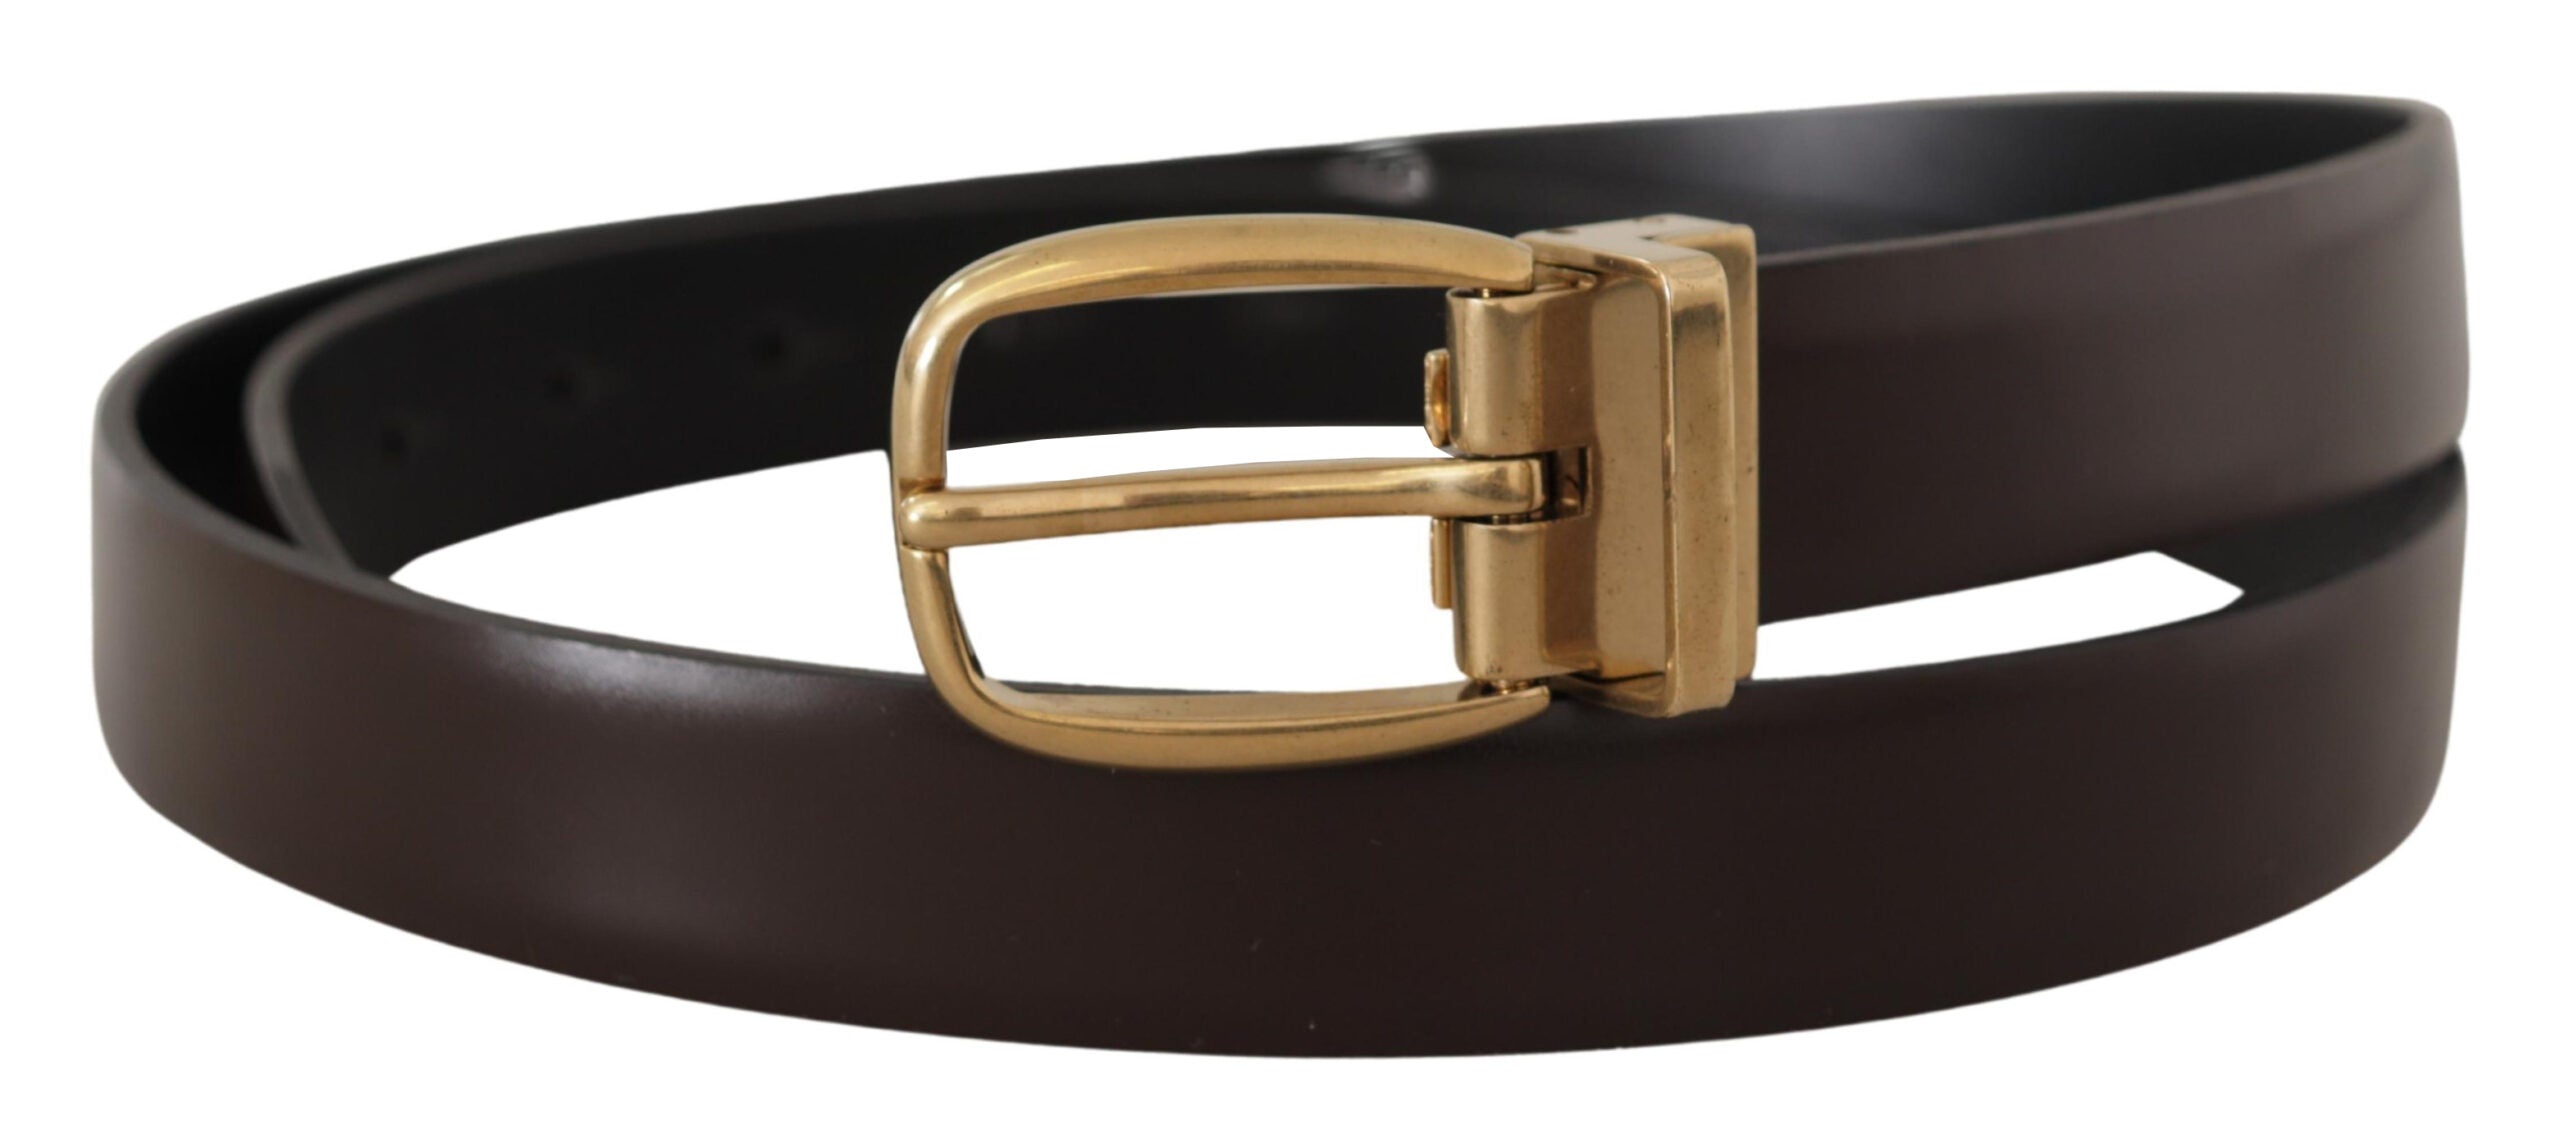 Brown Black Leather Belts for Women , Women's Belts for Jeans , Designer Belts for Women Light Brown / 2.5cm / 1